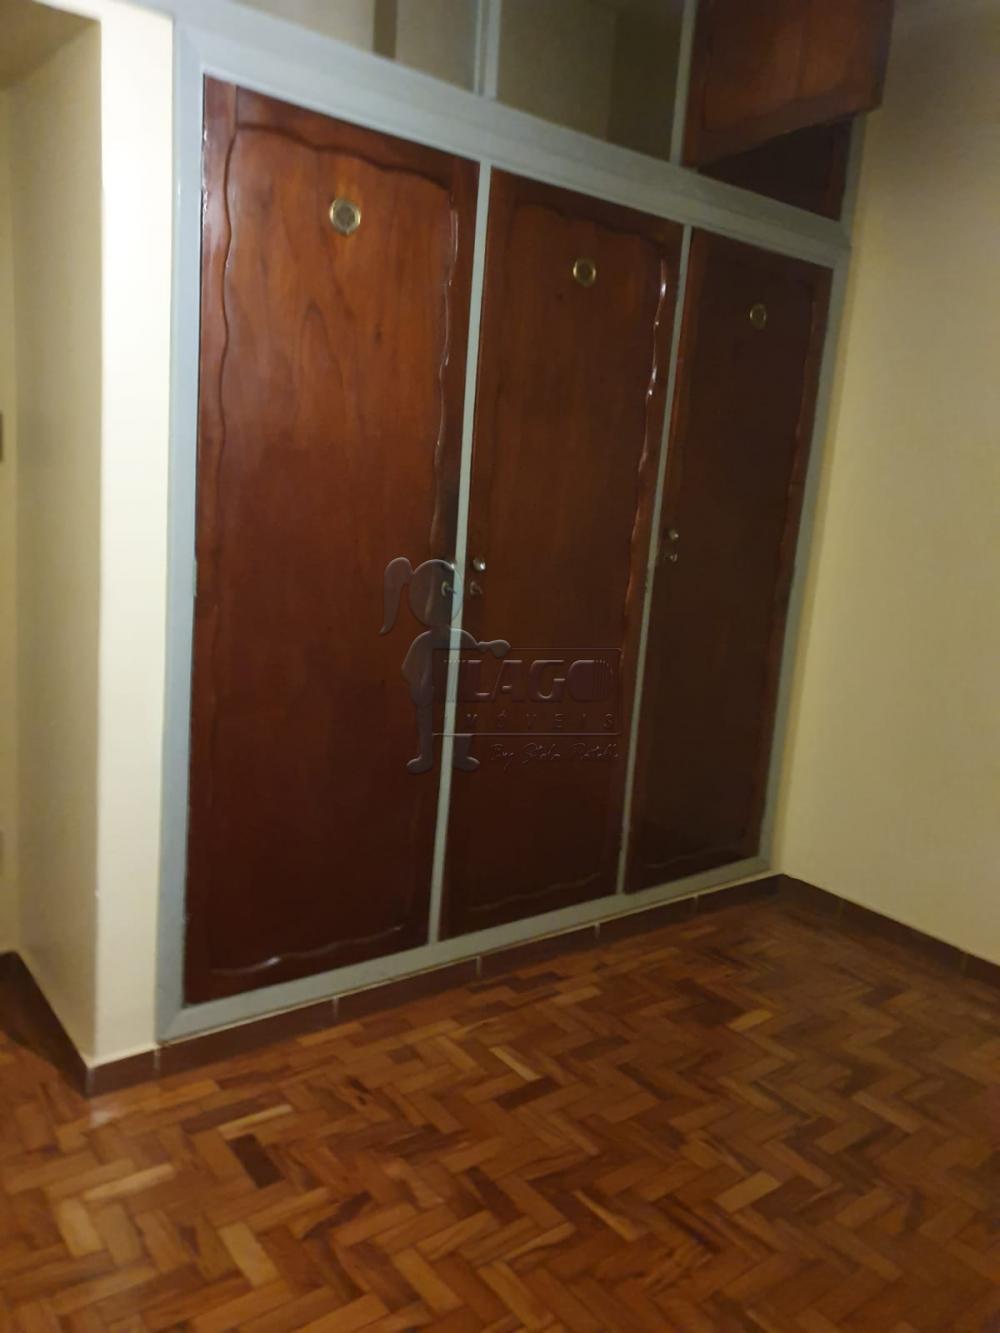 Alugar Casa / Padrão em Ribeirão Preto R$ 1.600,00 - Foto 10